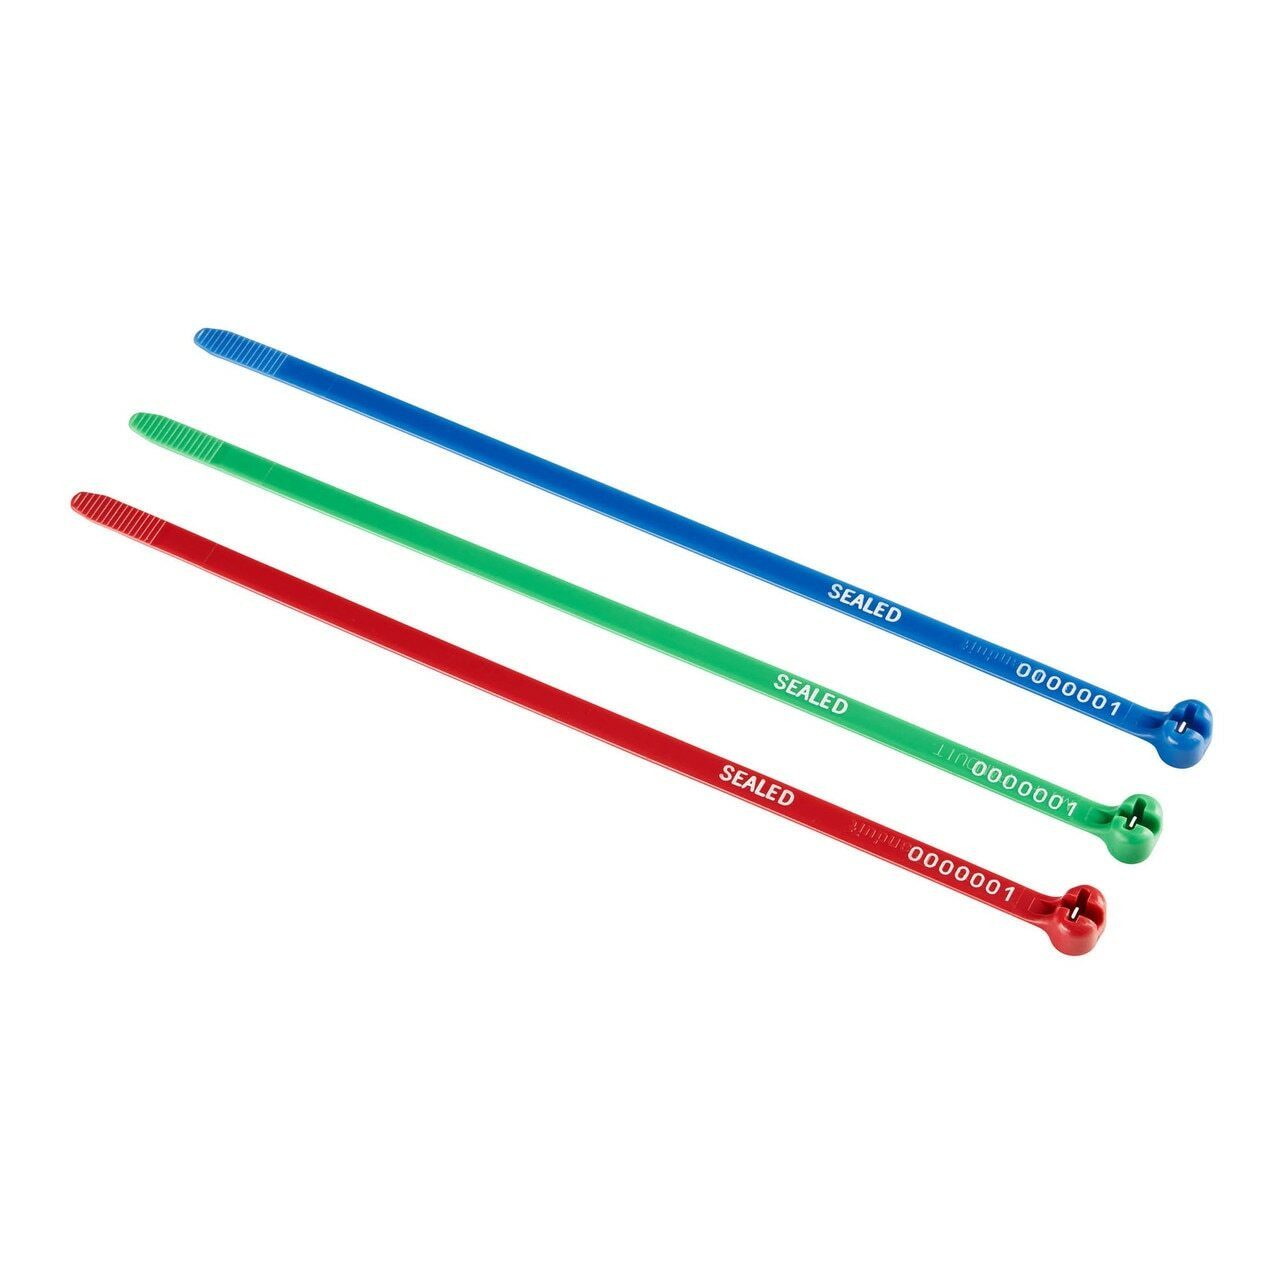 Printed Cable Ties - Plas-Ties, Co